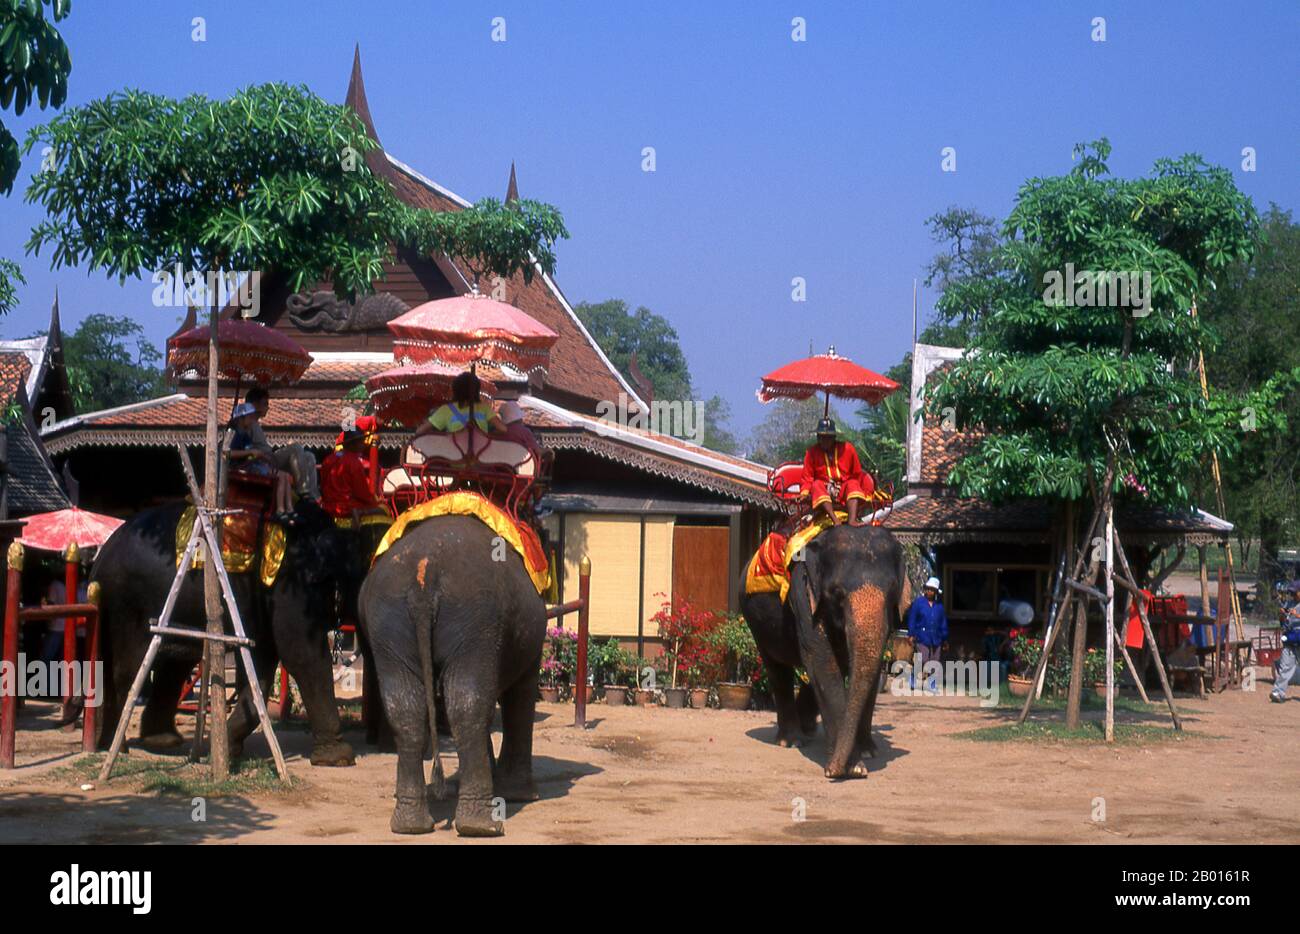 Thailand: Elefanten im Ayutthaya Historical Park. Der asiatische oder asiatische Elefant (Elephas maximus) ist die einzige lebende Art der Gattung Elephas und ist auf dem Subkontinent und Südostasien von Indien im Westen bis Borneo im Osten verbreitet. Asiatische Elefanten sind das größte lebende Landtier in Asien. In Thailand leben rund 2,600 Elefanten, die meisten davon sind domestiziert. Ayutthaya (Ayudhya) war ein siamesisches Königreich, das von 1351 bis 1767 existierte. Ayutthaya war gegenüber ausländischen Händlern freundlich. Stockfoto